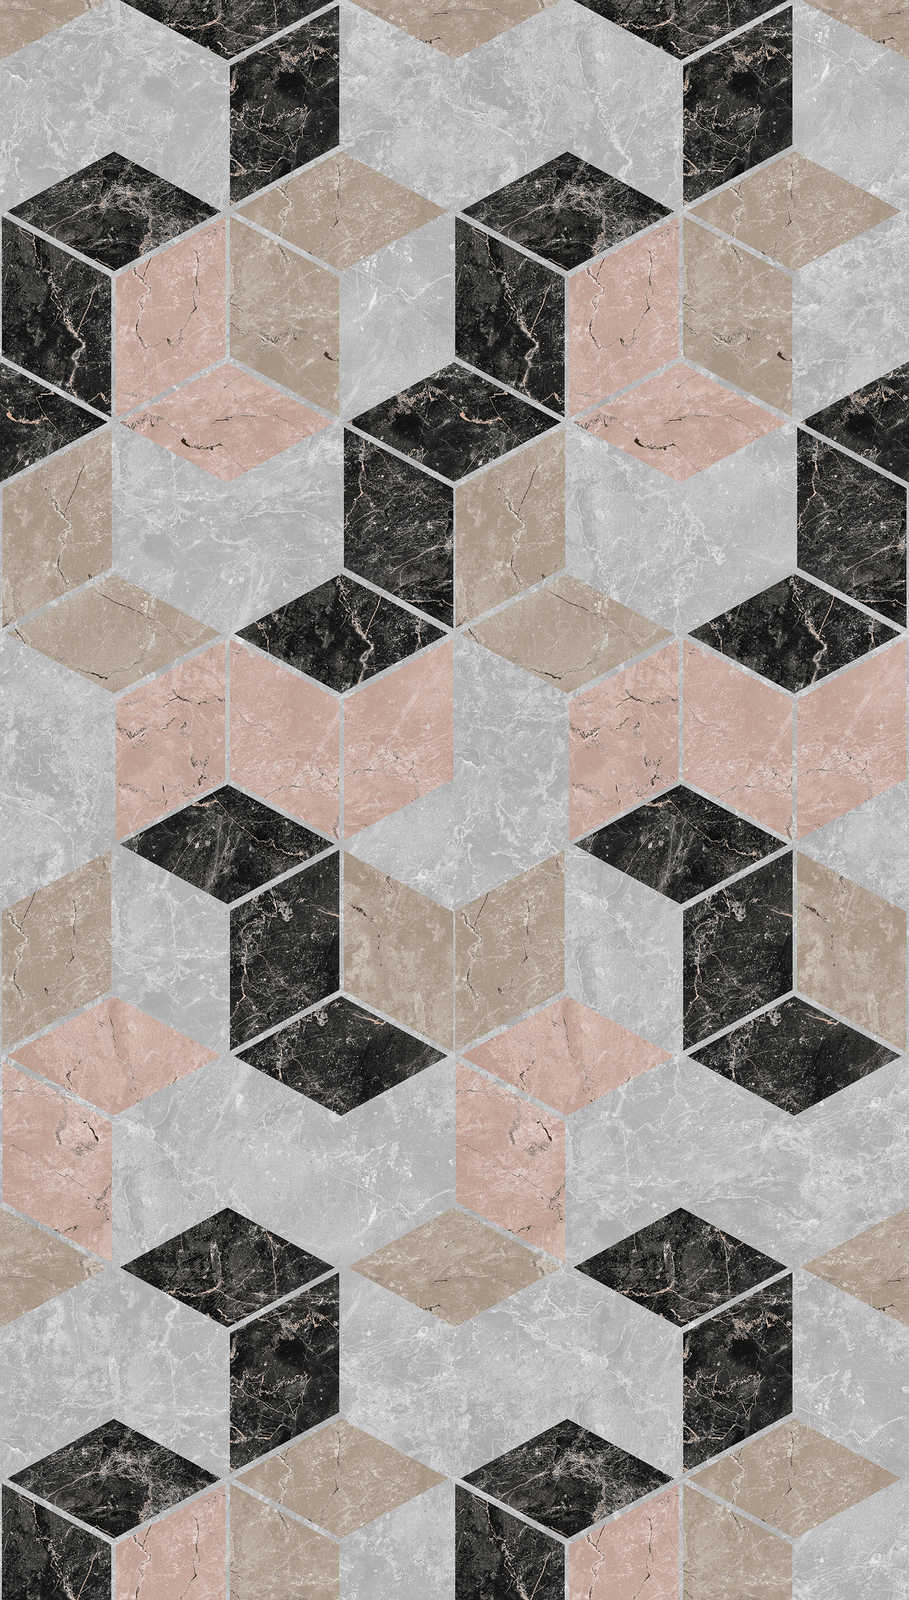             Geometric design wallpaper in diamond shape - grey, beige, black
        